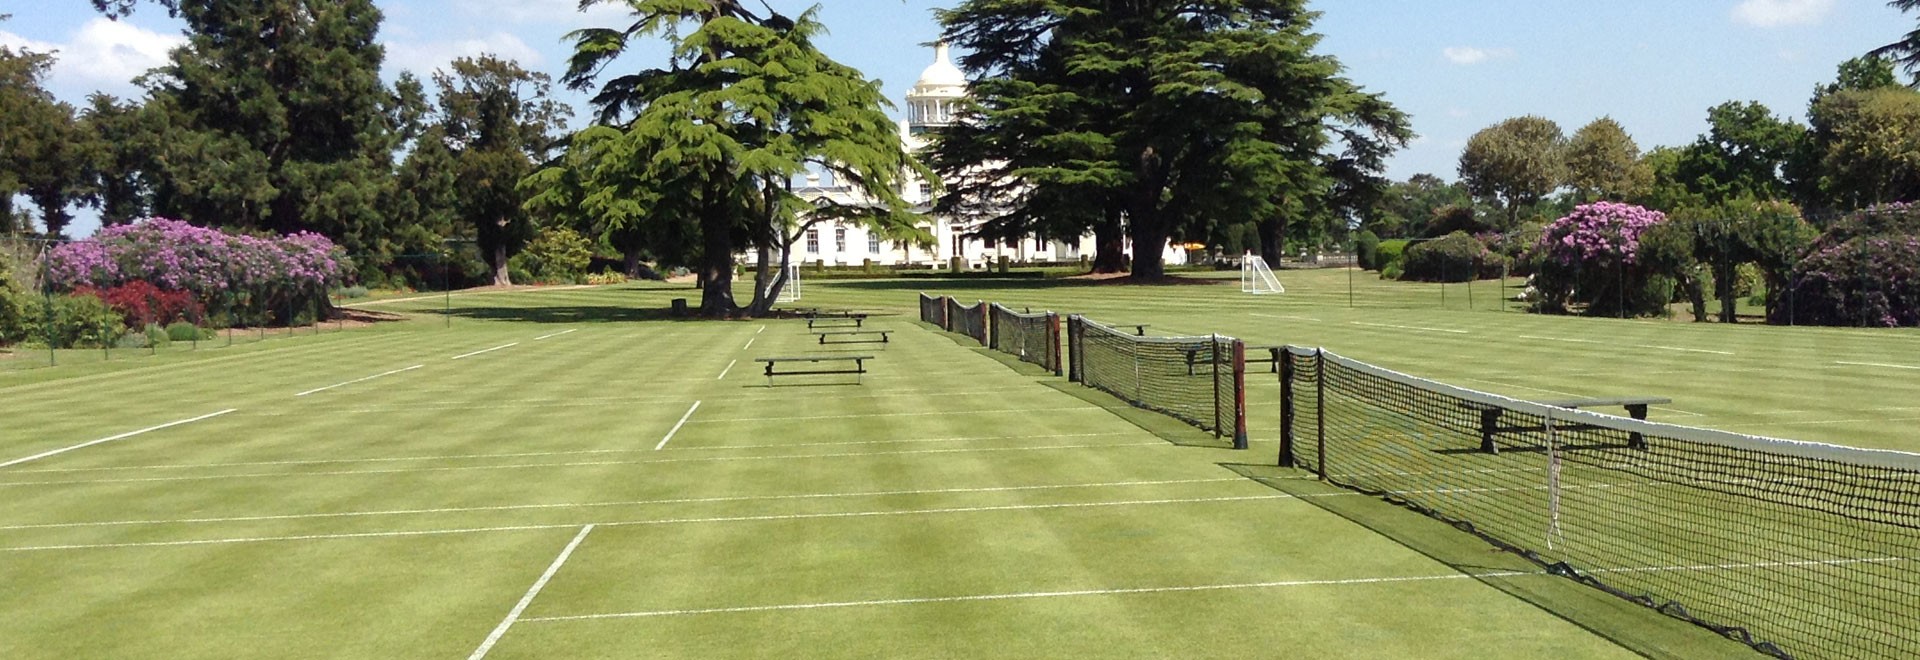 The Best Tennis Getaways in the UK - UK's Top 5 Tennis Venues Open to the Public